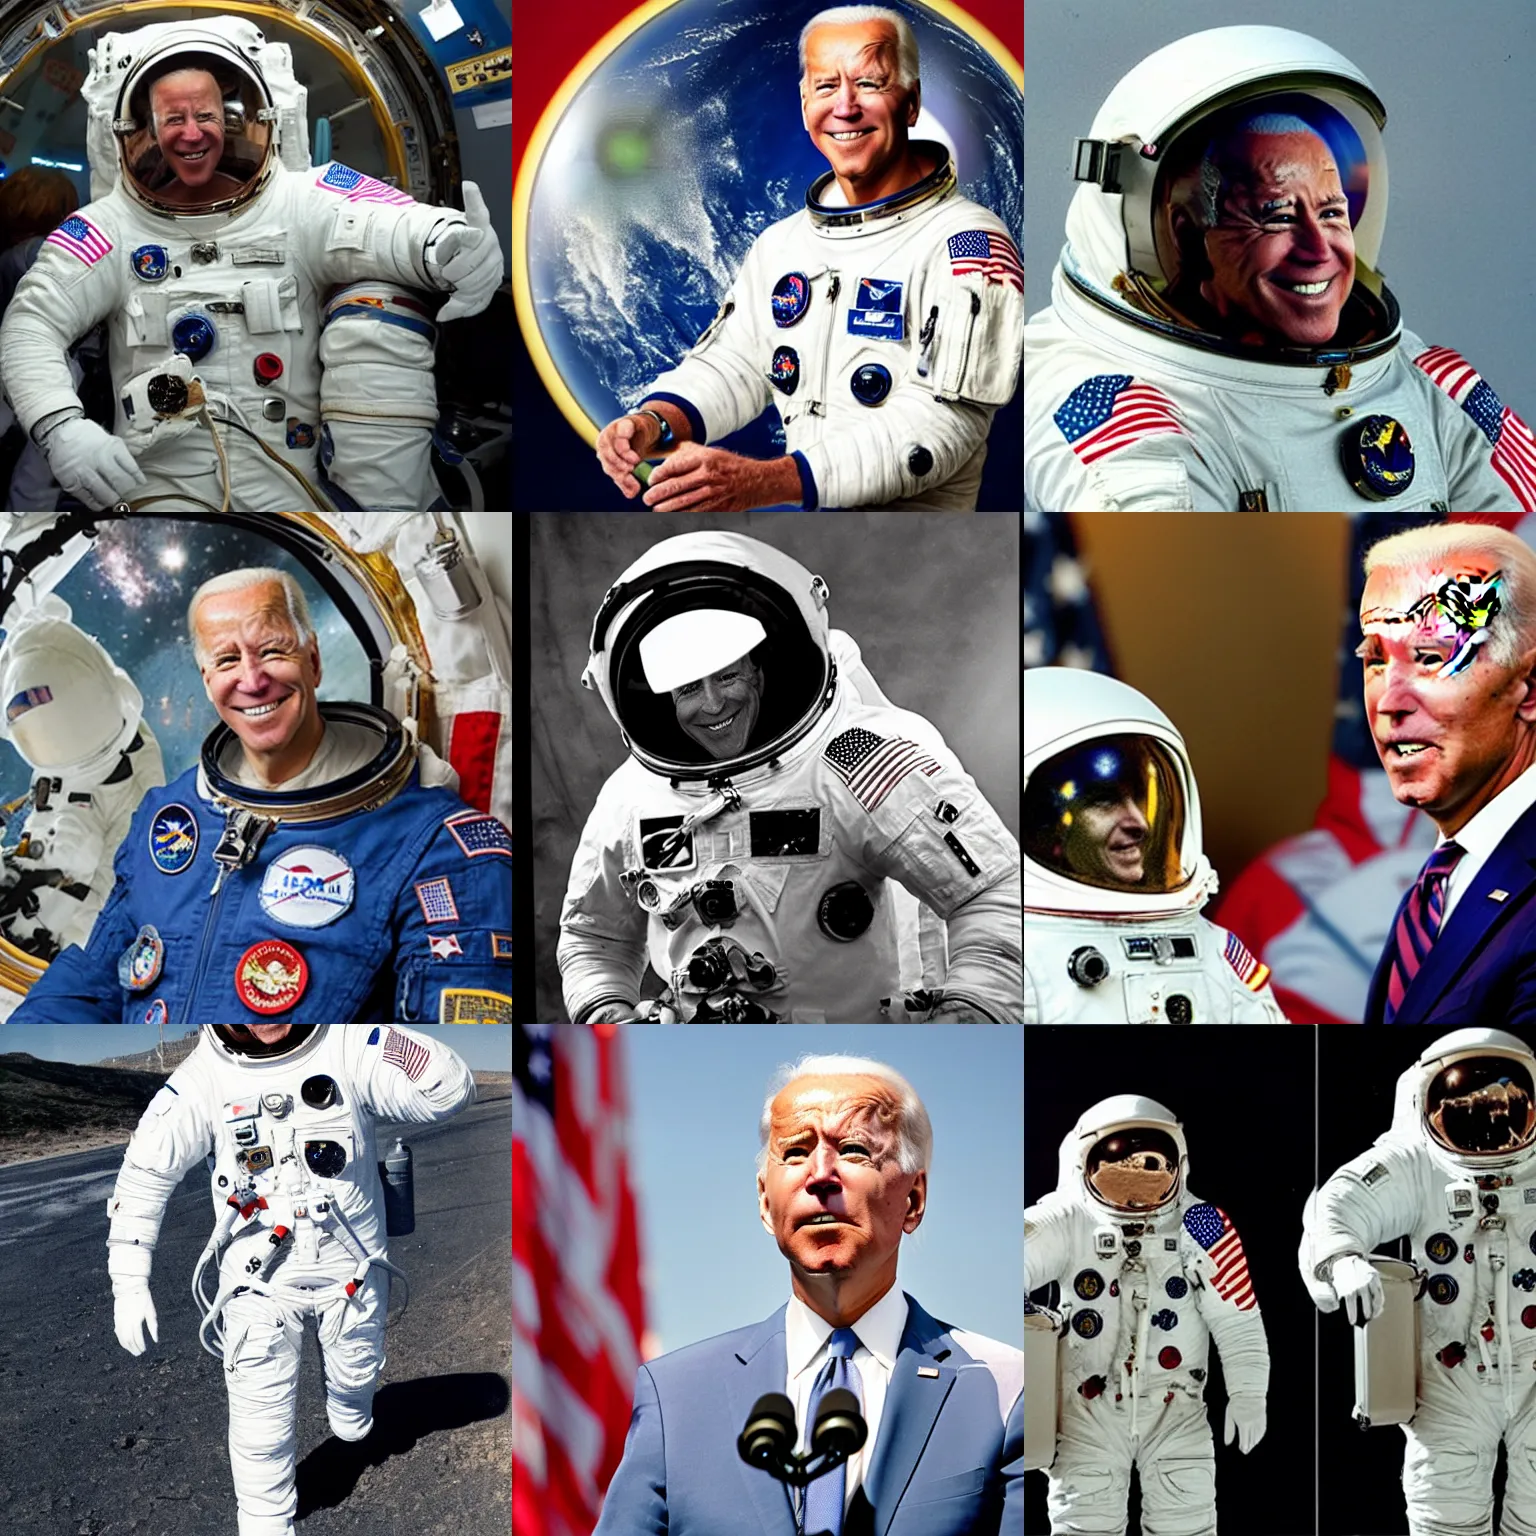 Prompt: Joe Biden as an astronaut